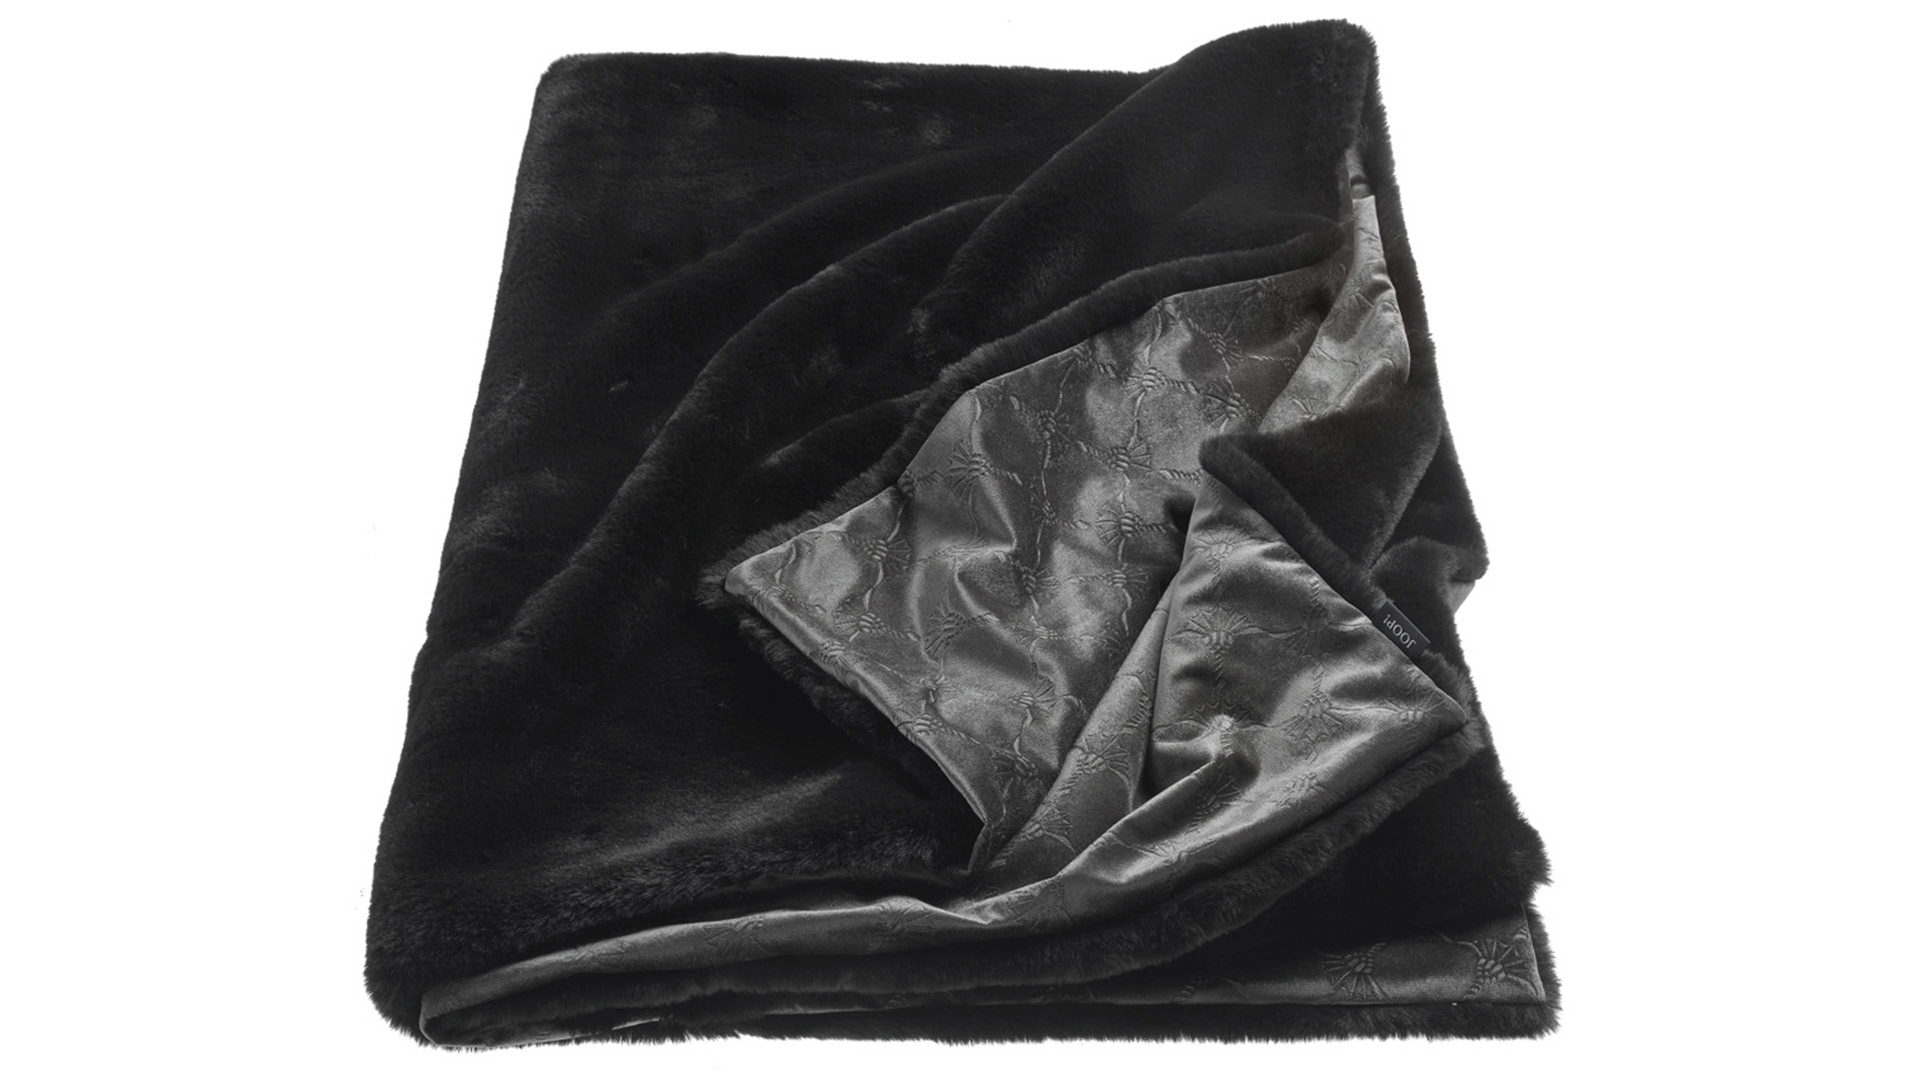 Wohndecke Stoeckel & grimmler aus Kunstfaser in Schwarz JOOP! Wohndecke Smooth schwarze Kunstfaser - ca. 130 x 170 cm